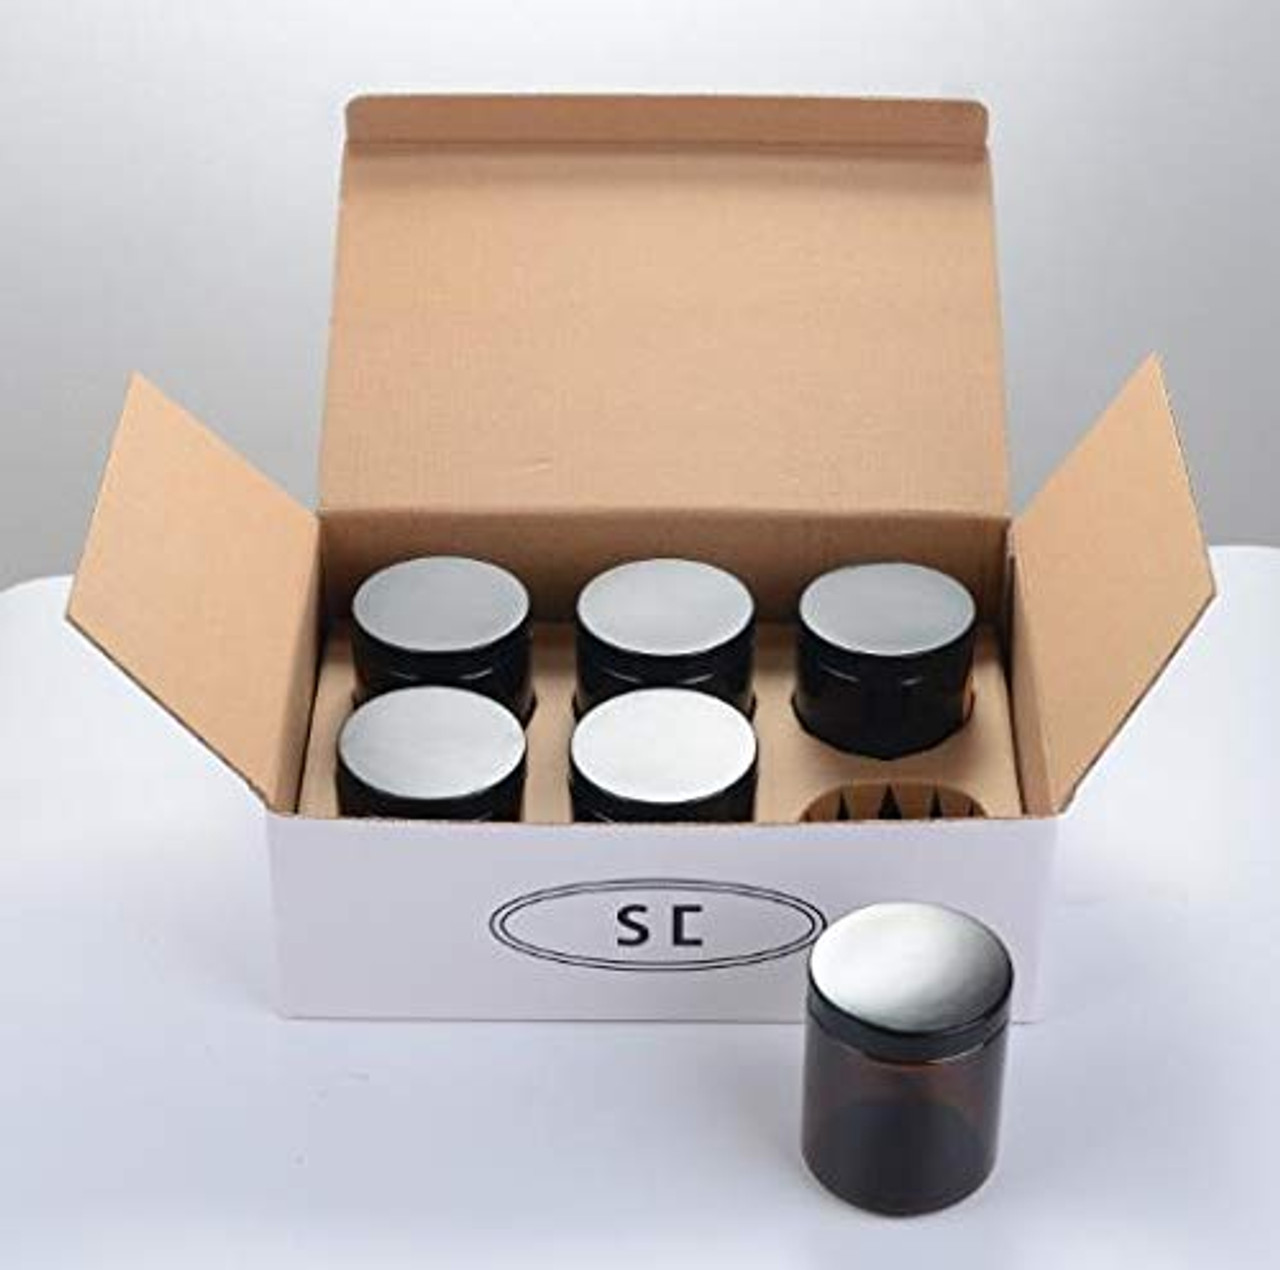 8 oz Square Mason Jar Shipping Box